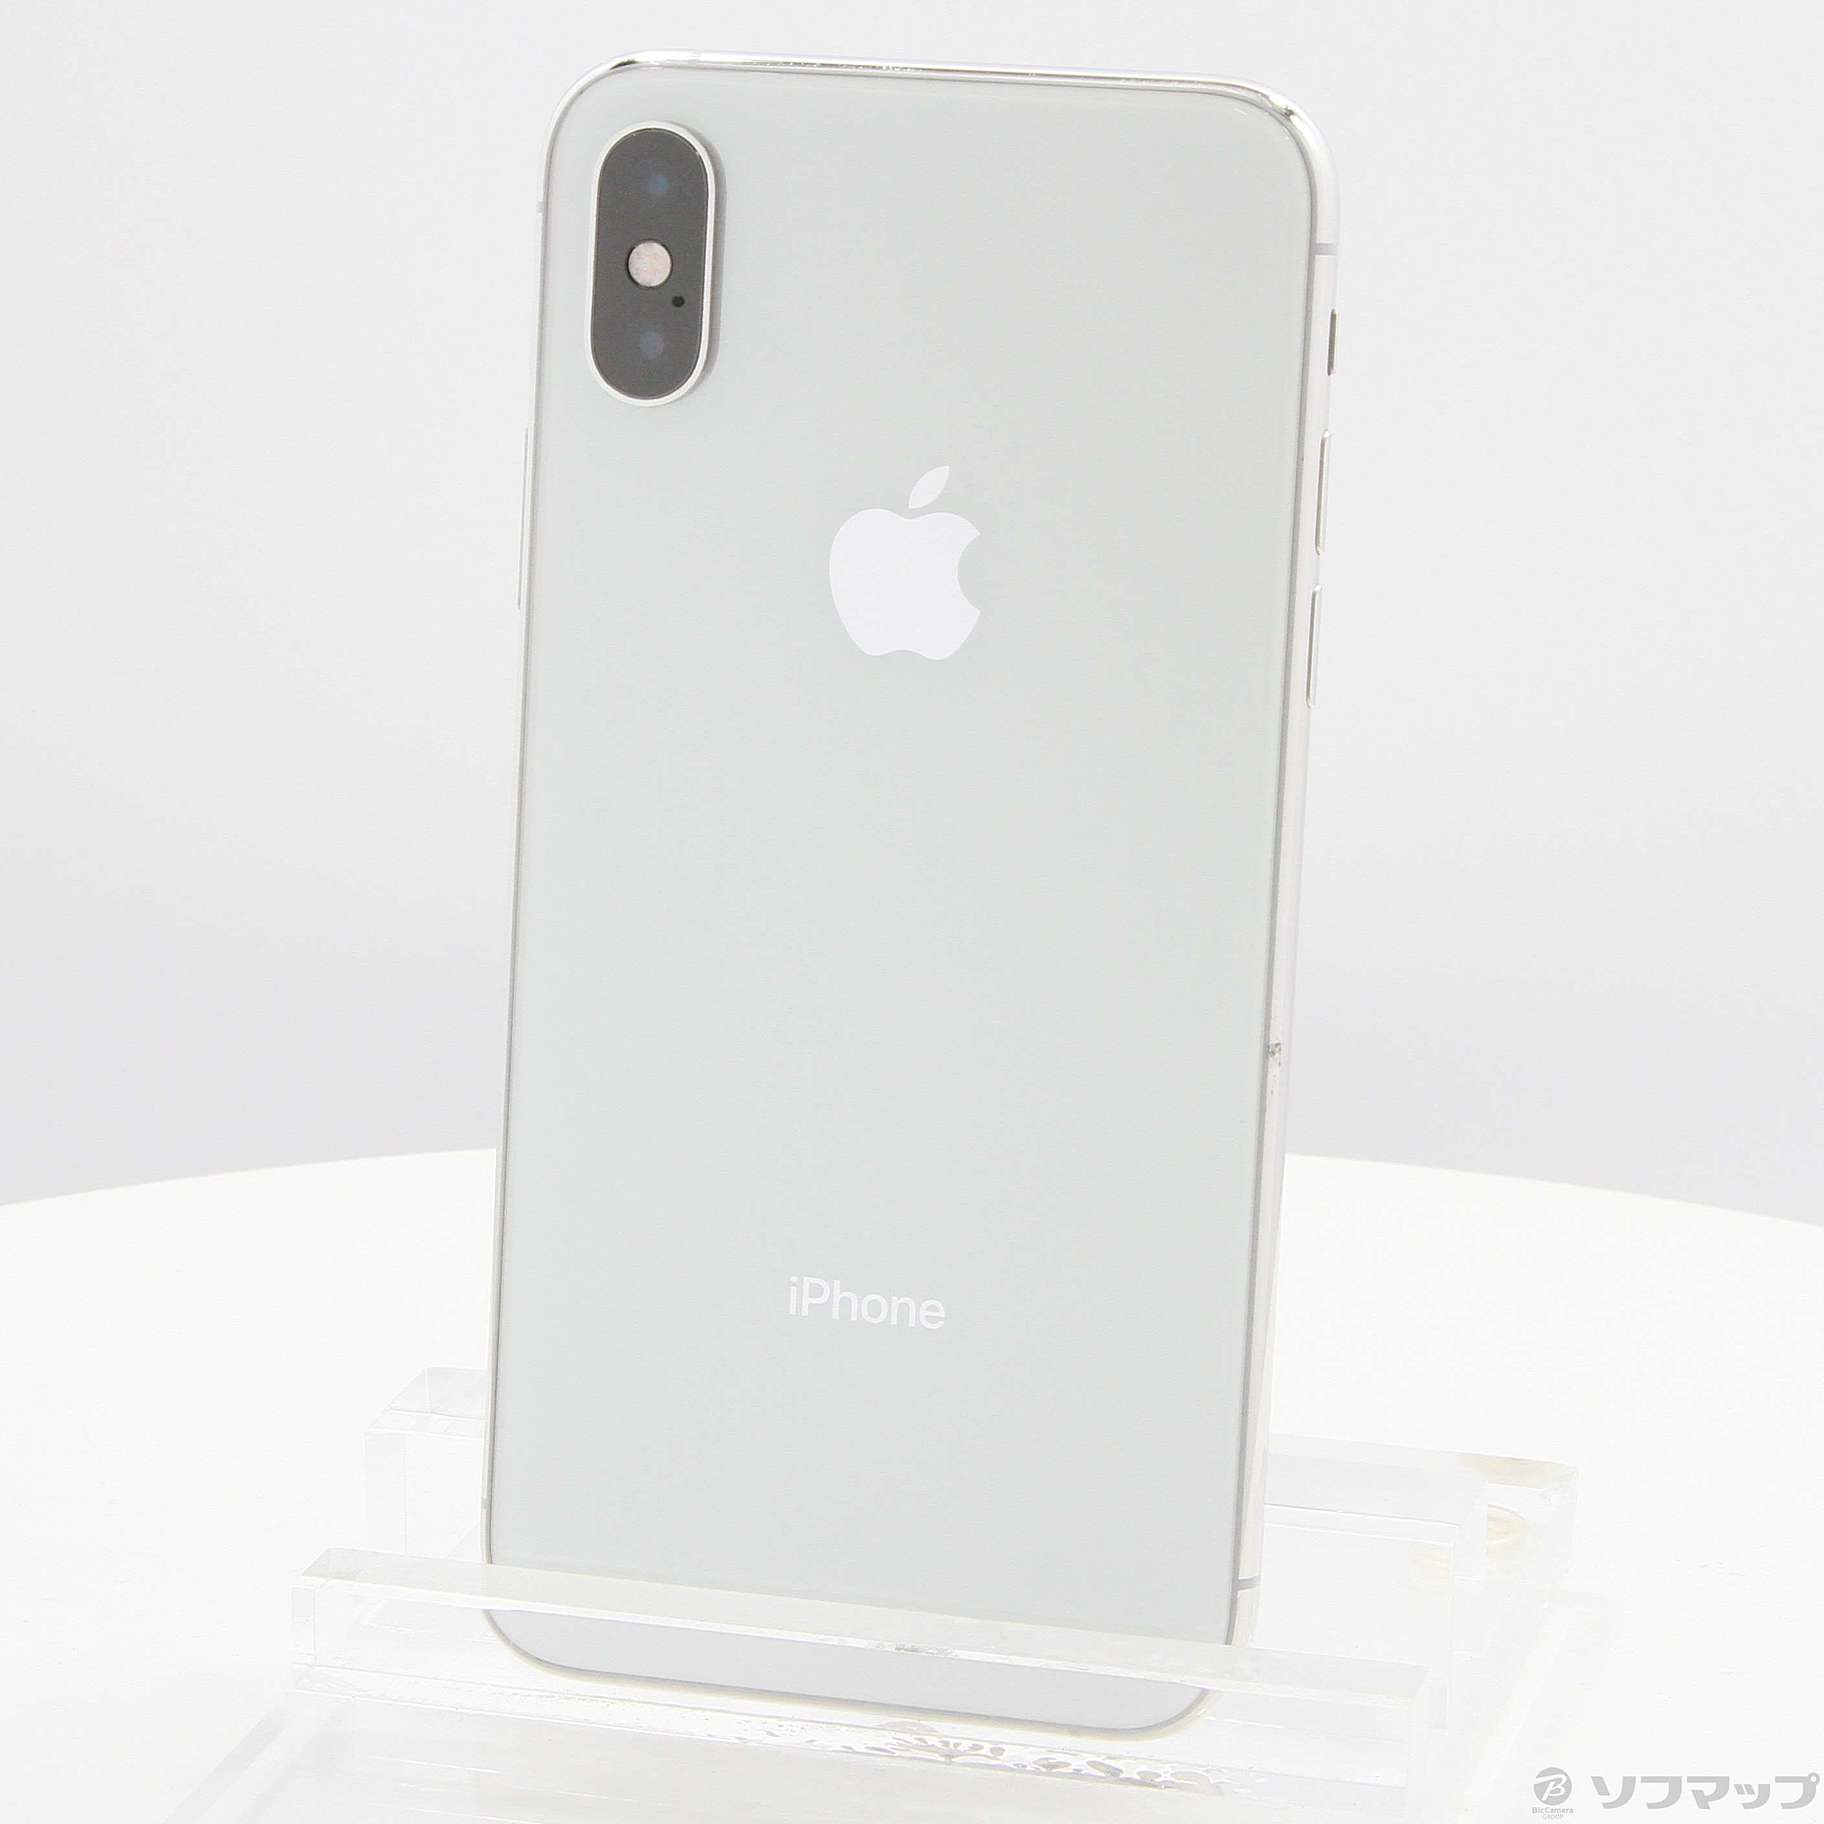 Apple iPhone XS 64GB シルバー - www.sorbillomenu.com